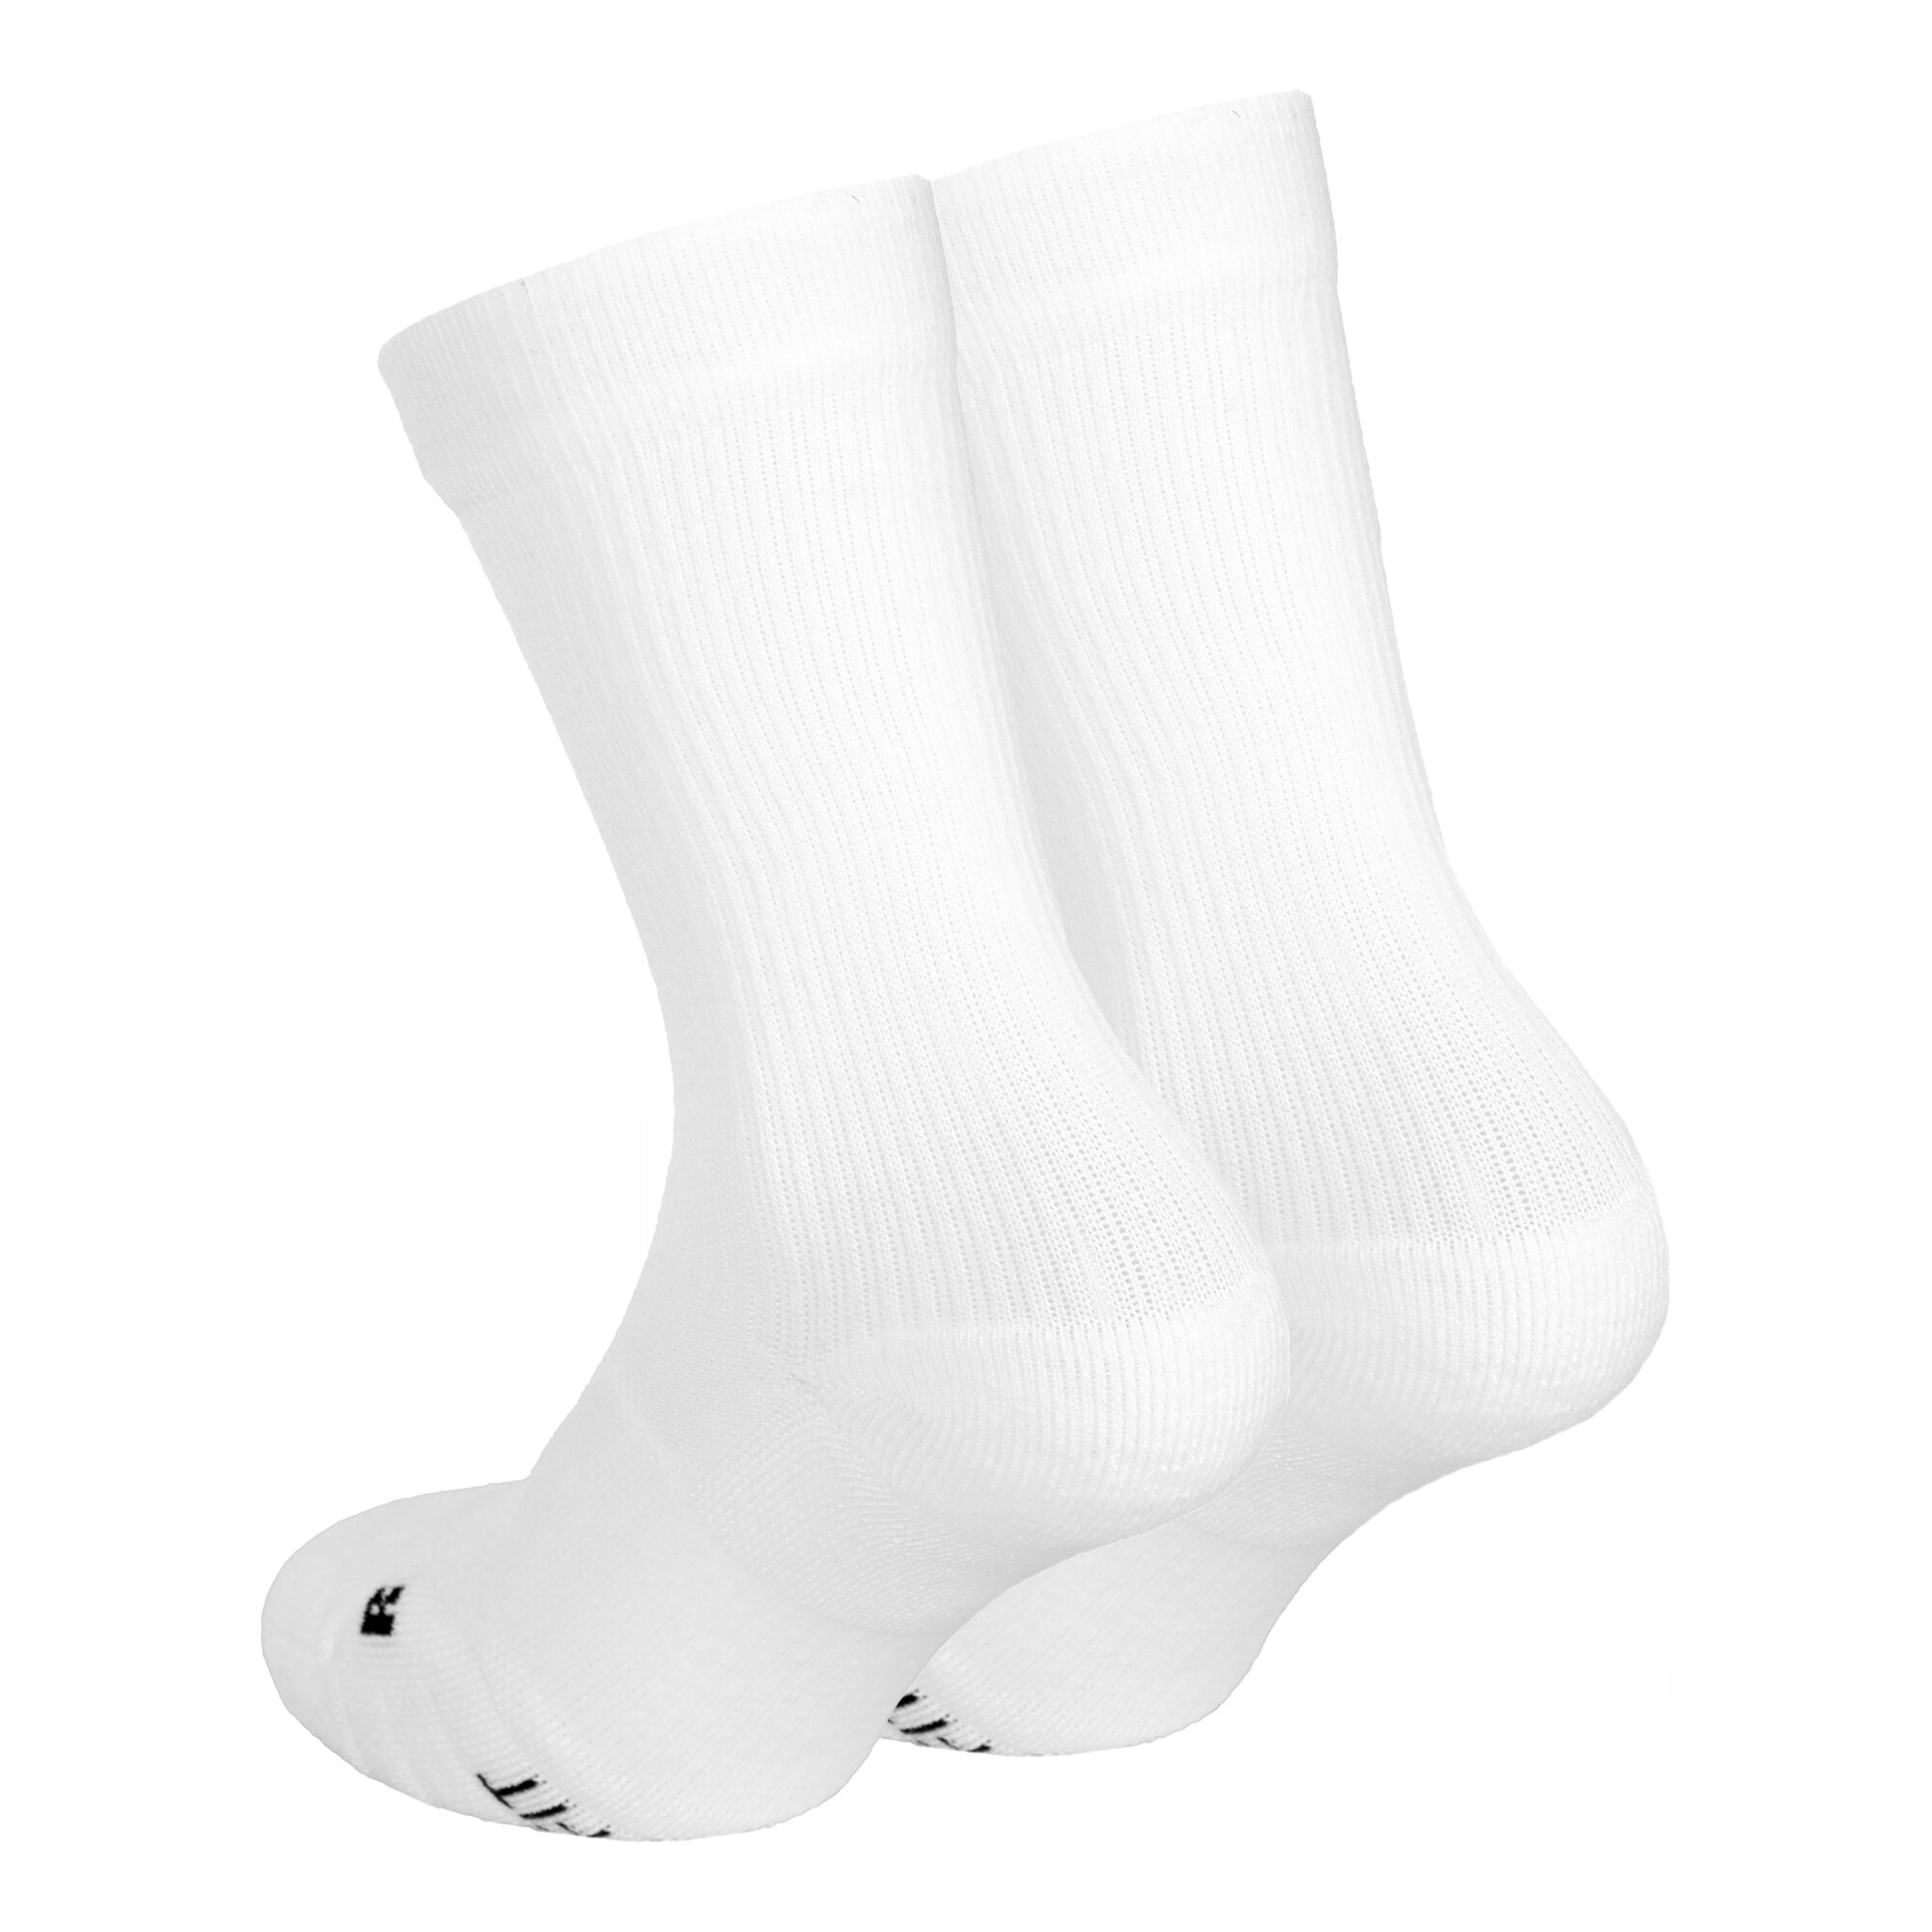 Buy Nike Court Multiplier Cushioned Tennis Socks 2 Pack White, Black online